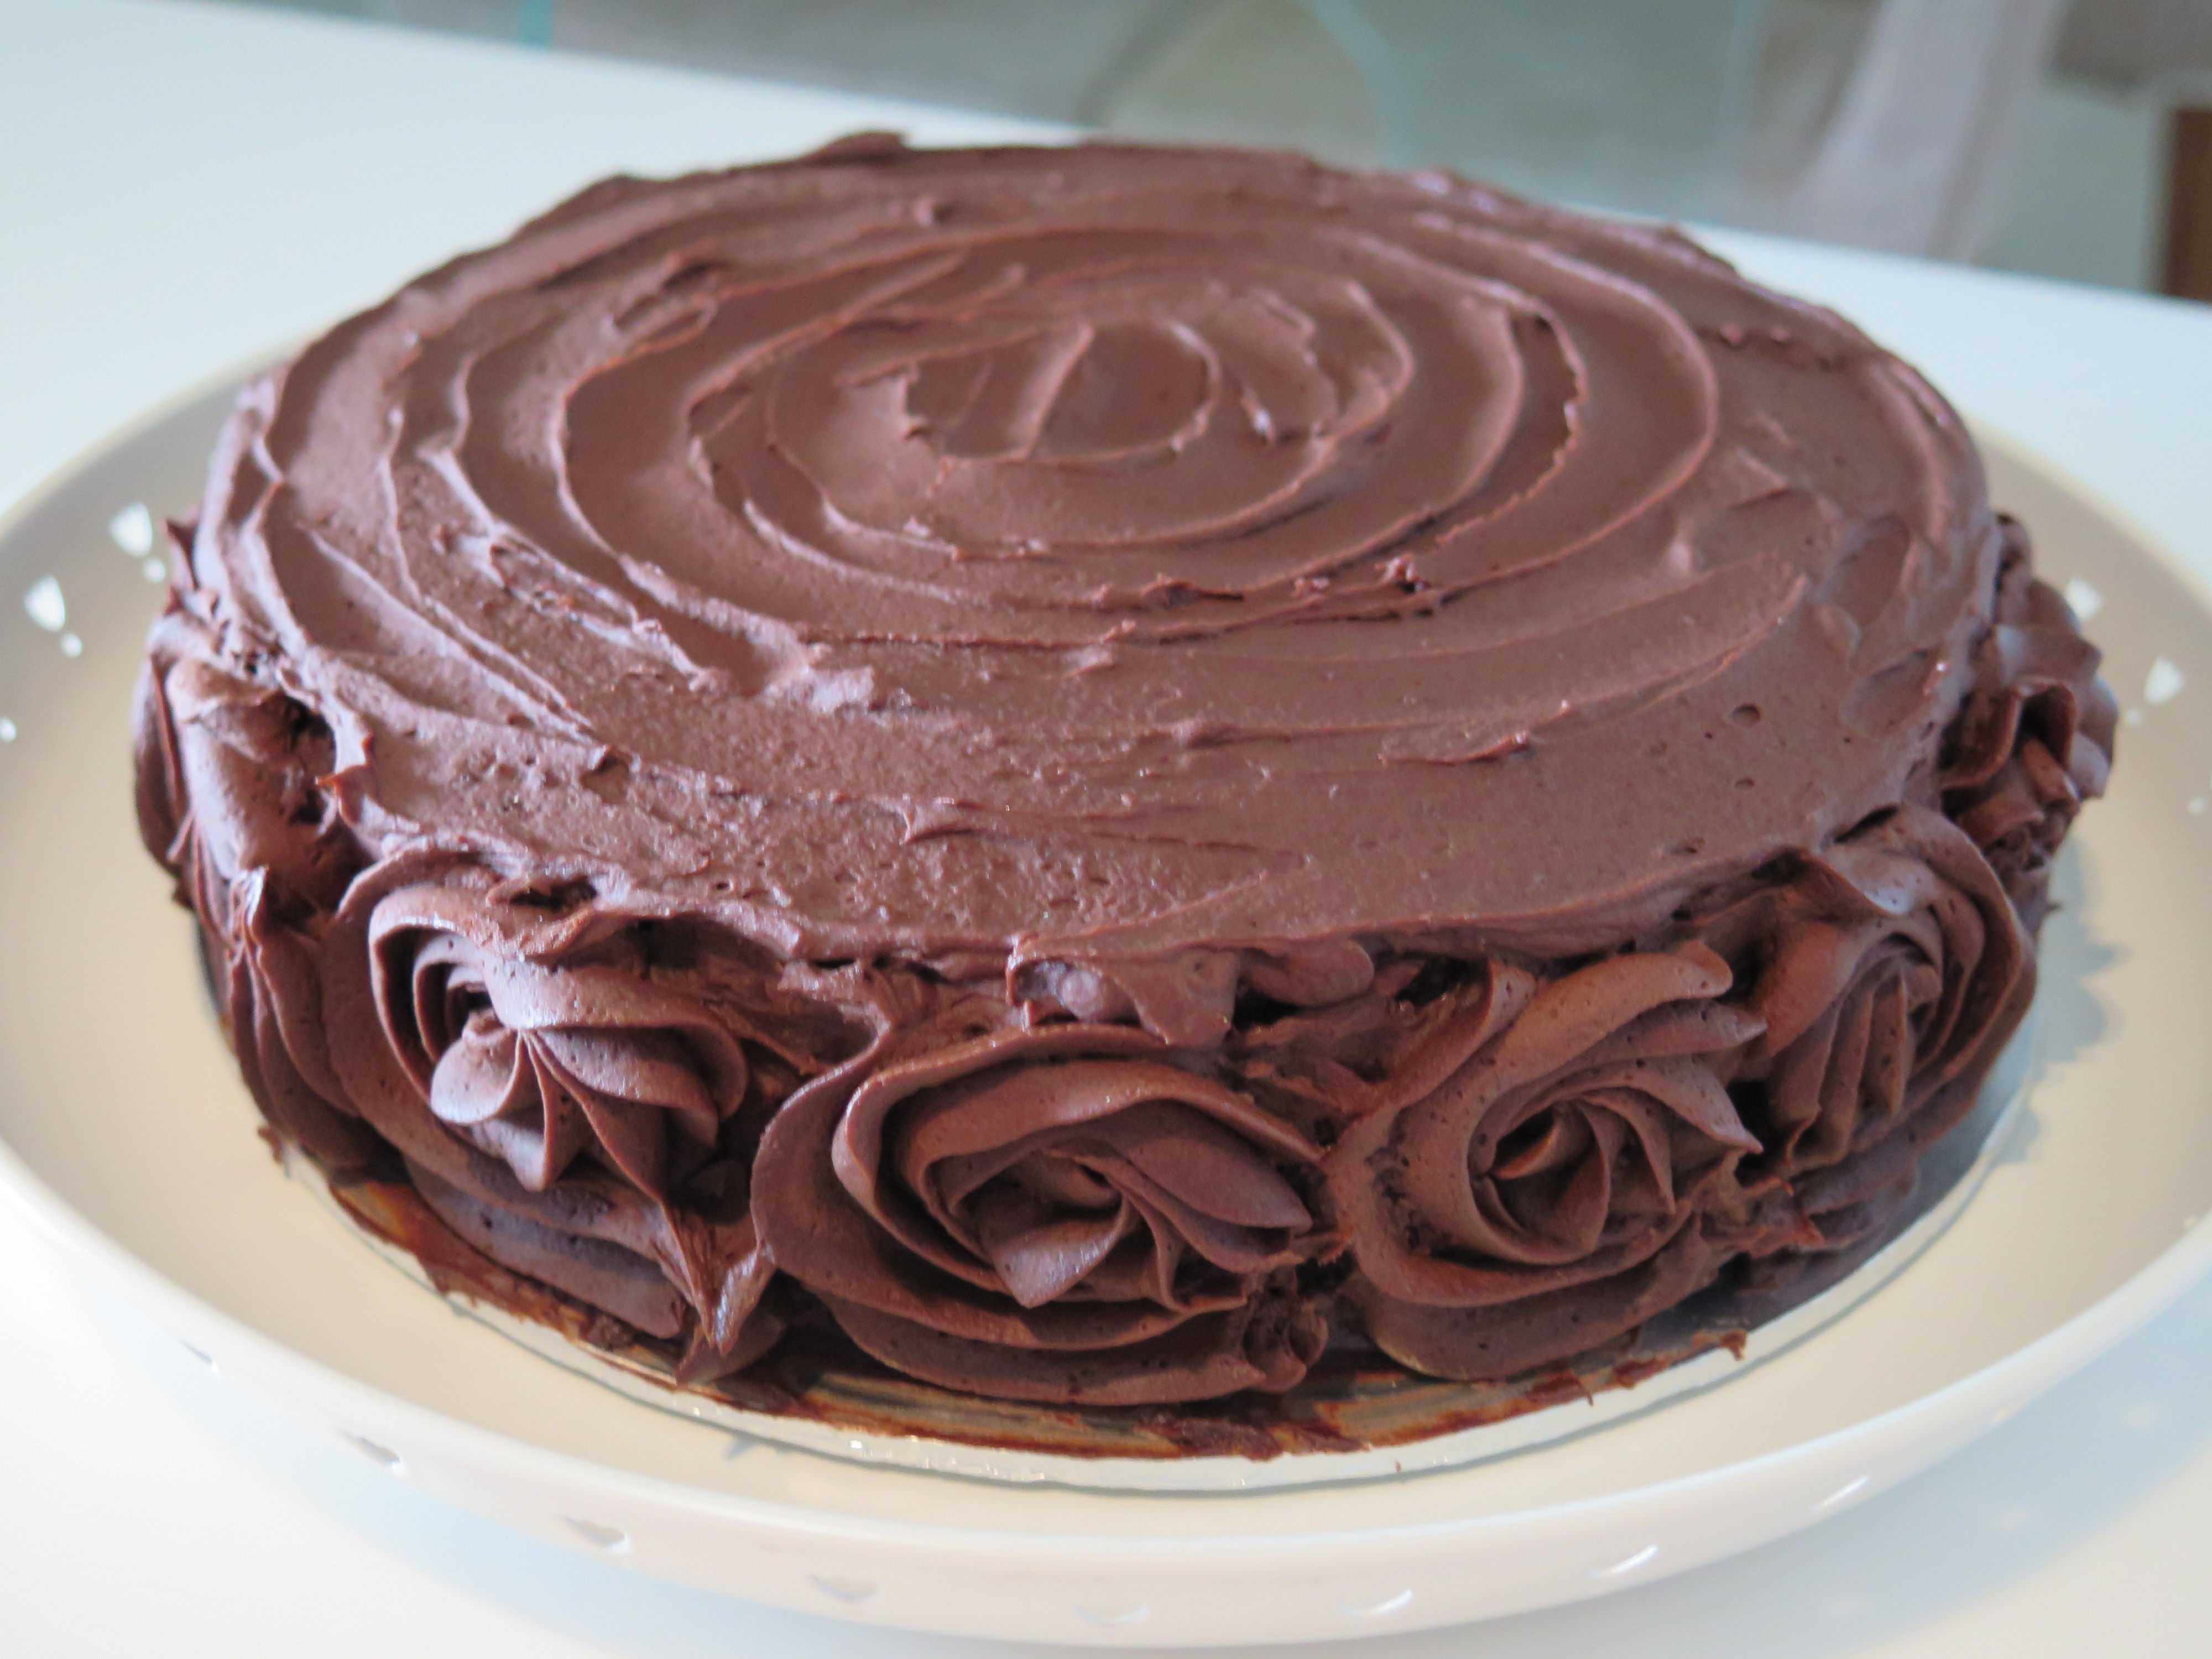 Guaranteed moist chocolate cake recipe - All recipes UK